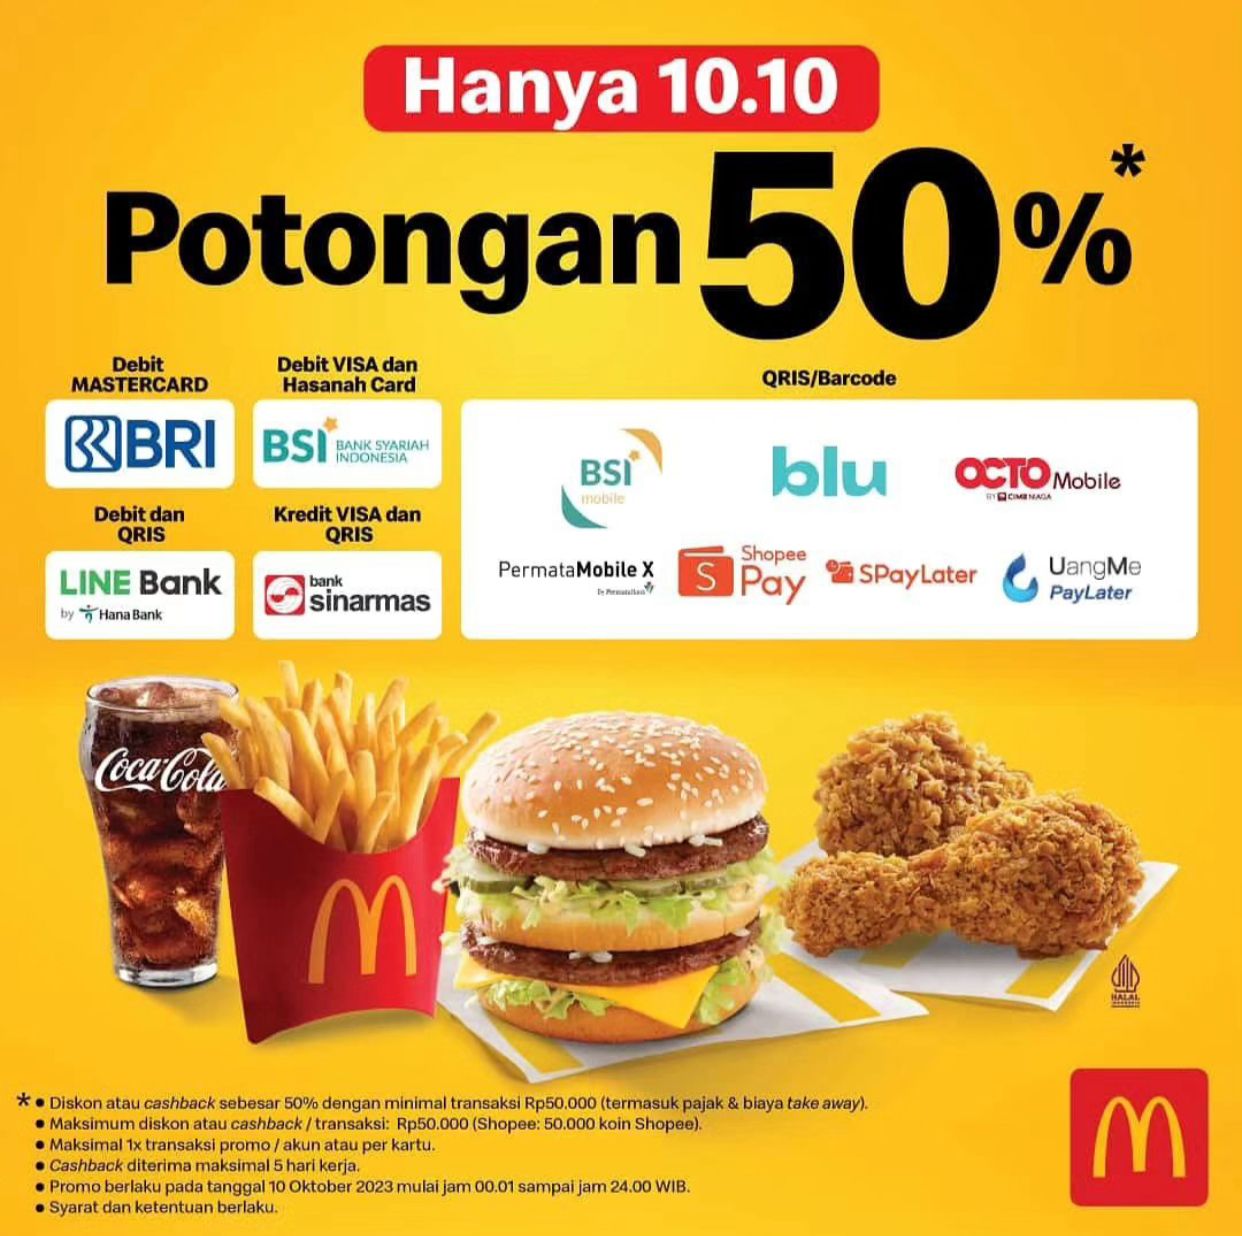 Promo McDonalds, Nantikan Hanya di 10.10 Potongan Hingga 50%!